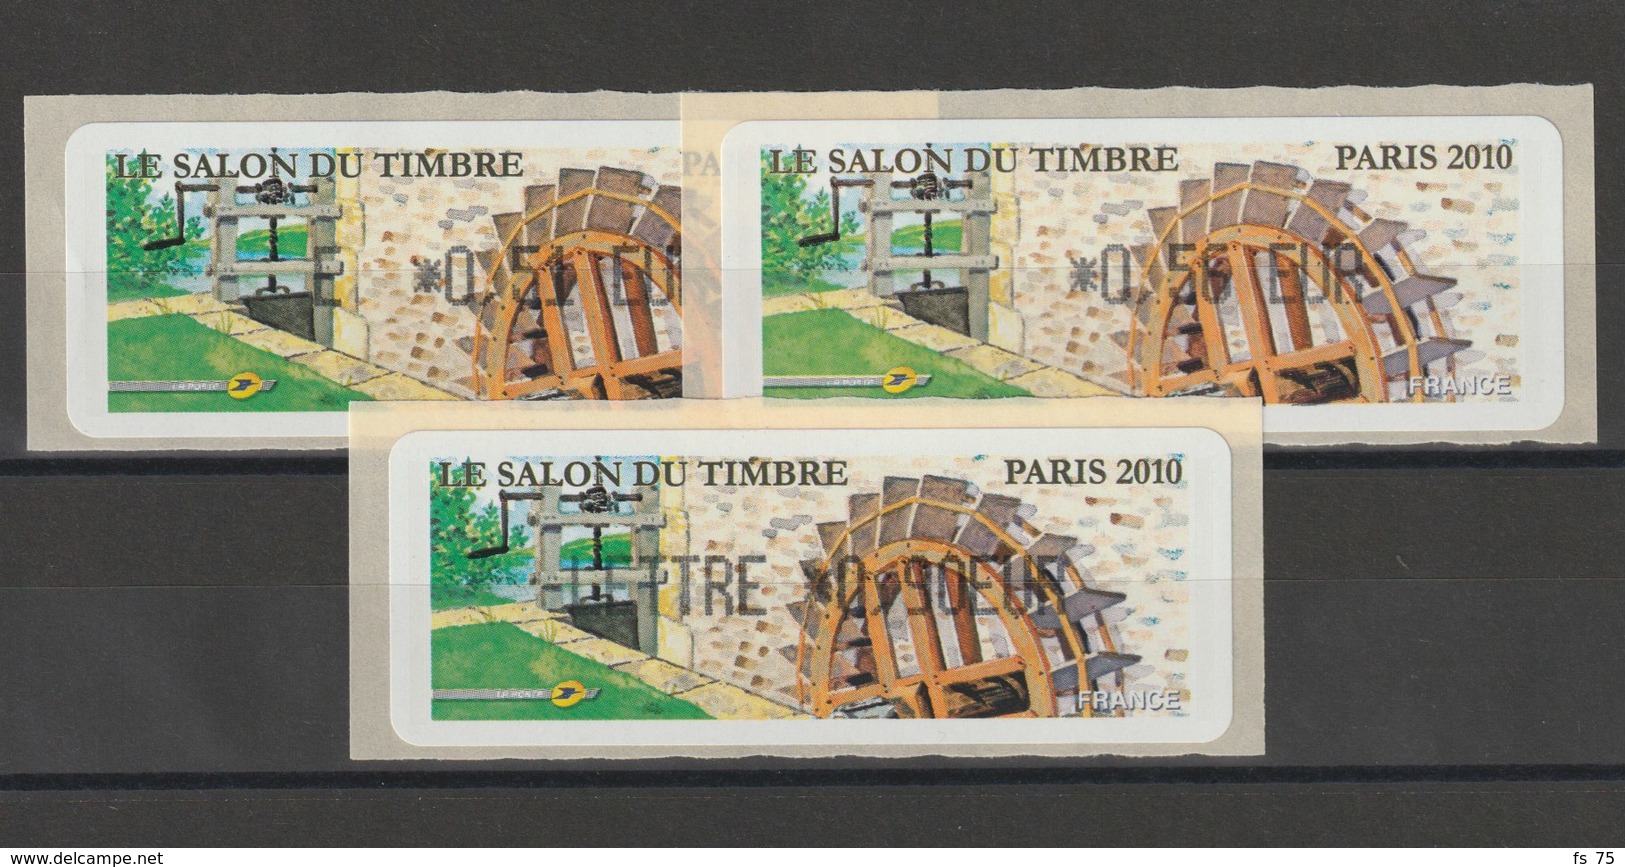 FRANCE - 3 VIGNETTES 0,51€, 0,56€ ET 0,90€ - LE SALON DU TIMBRE PARIS 2010 - 2010-... Vignette Illustrate